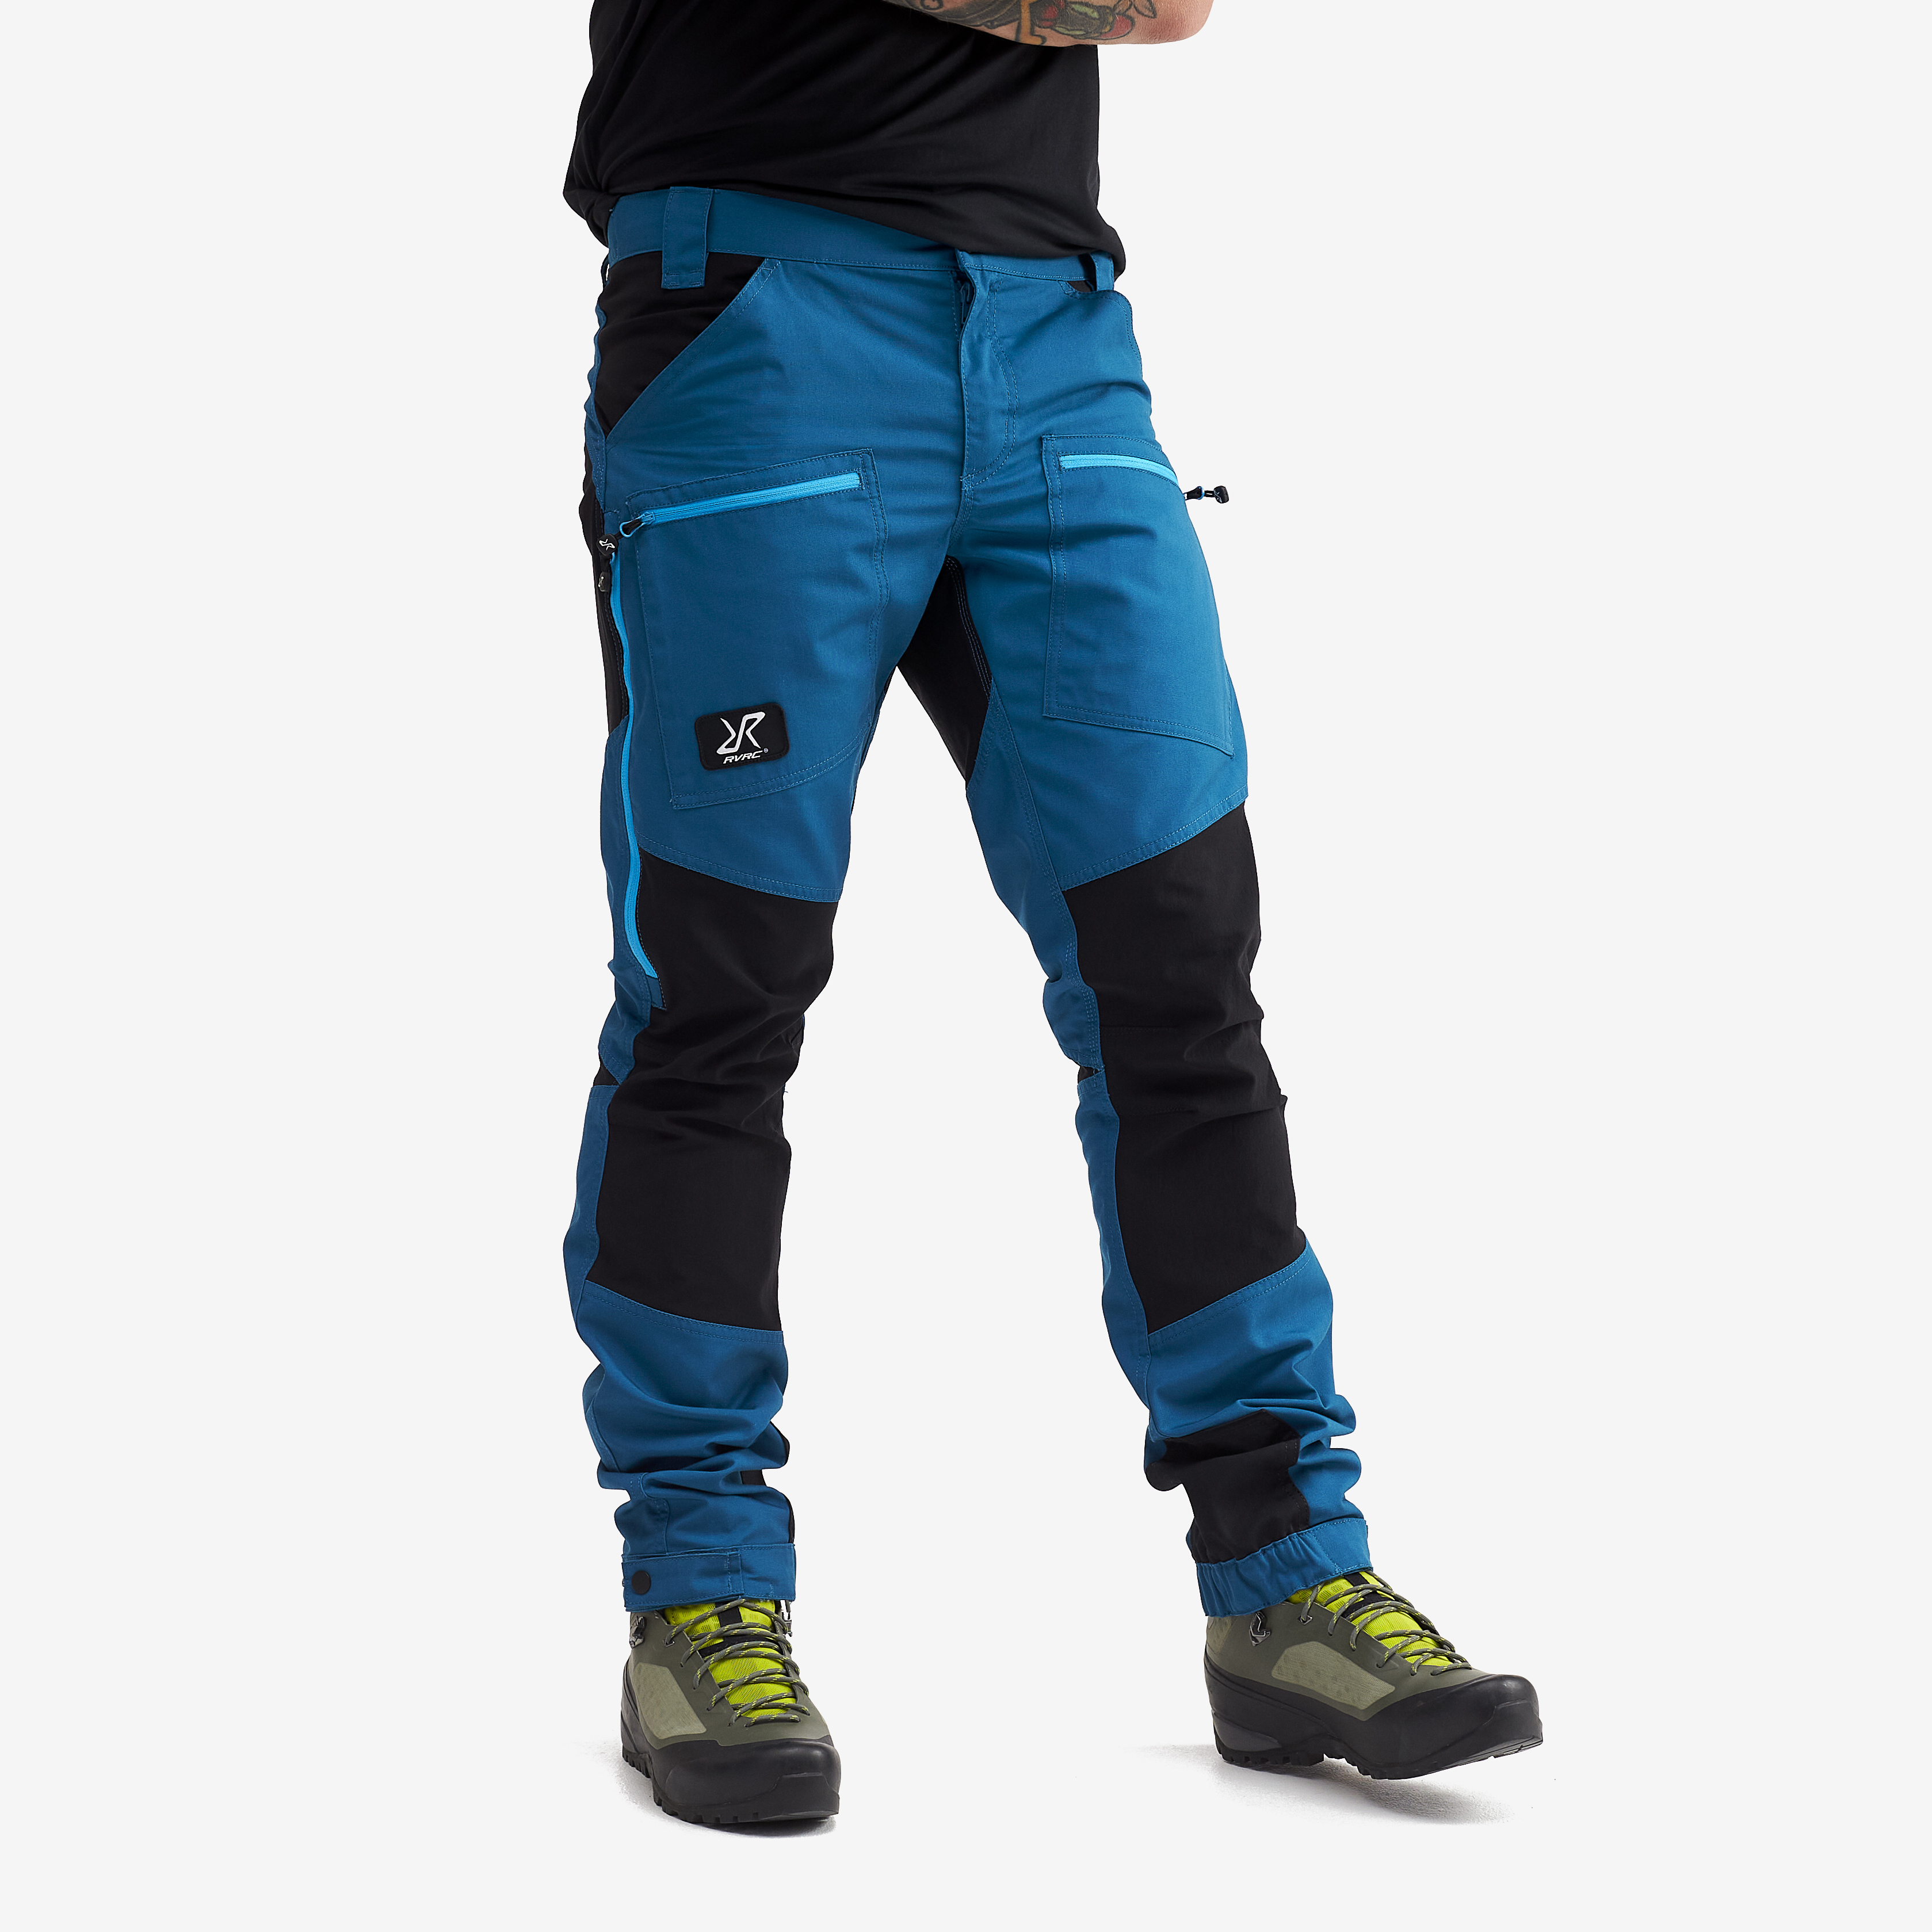 Nordwand Pro turistické kalhoty pro muže v modré barvě